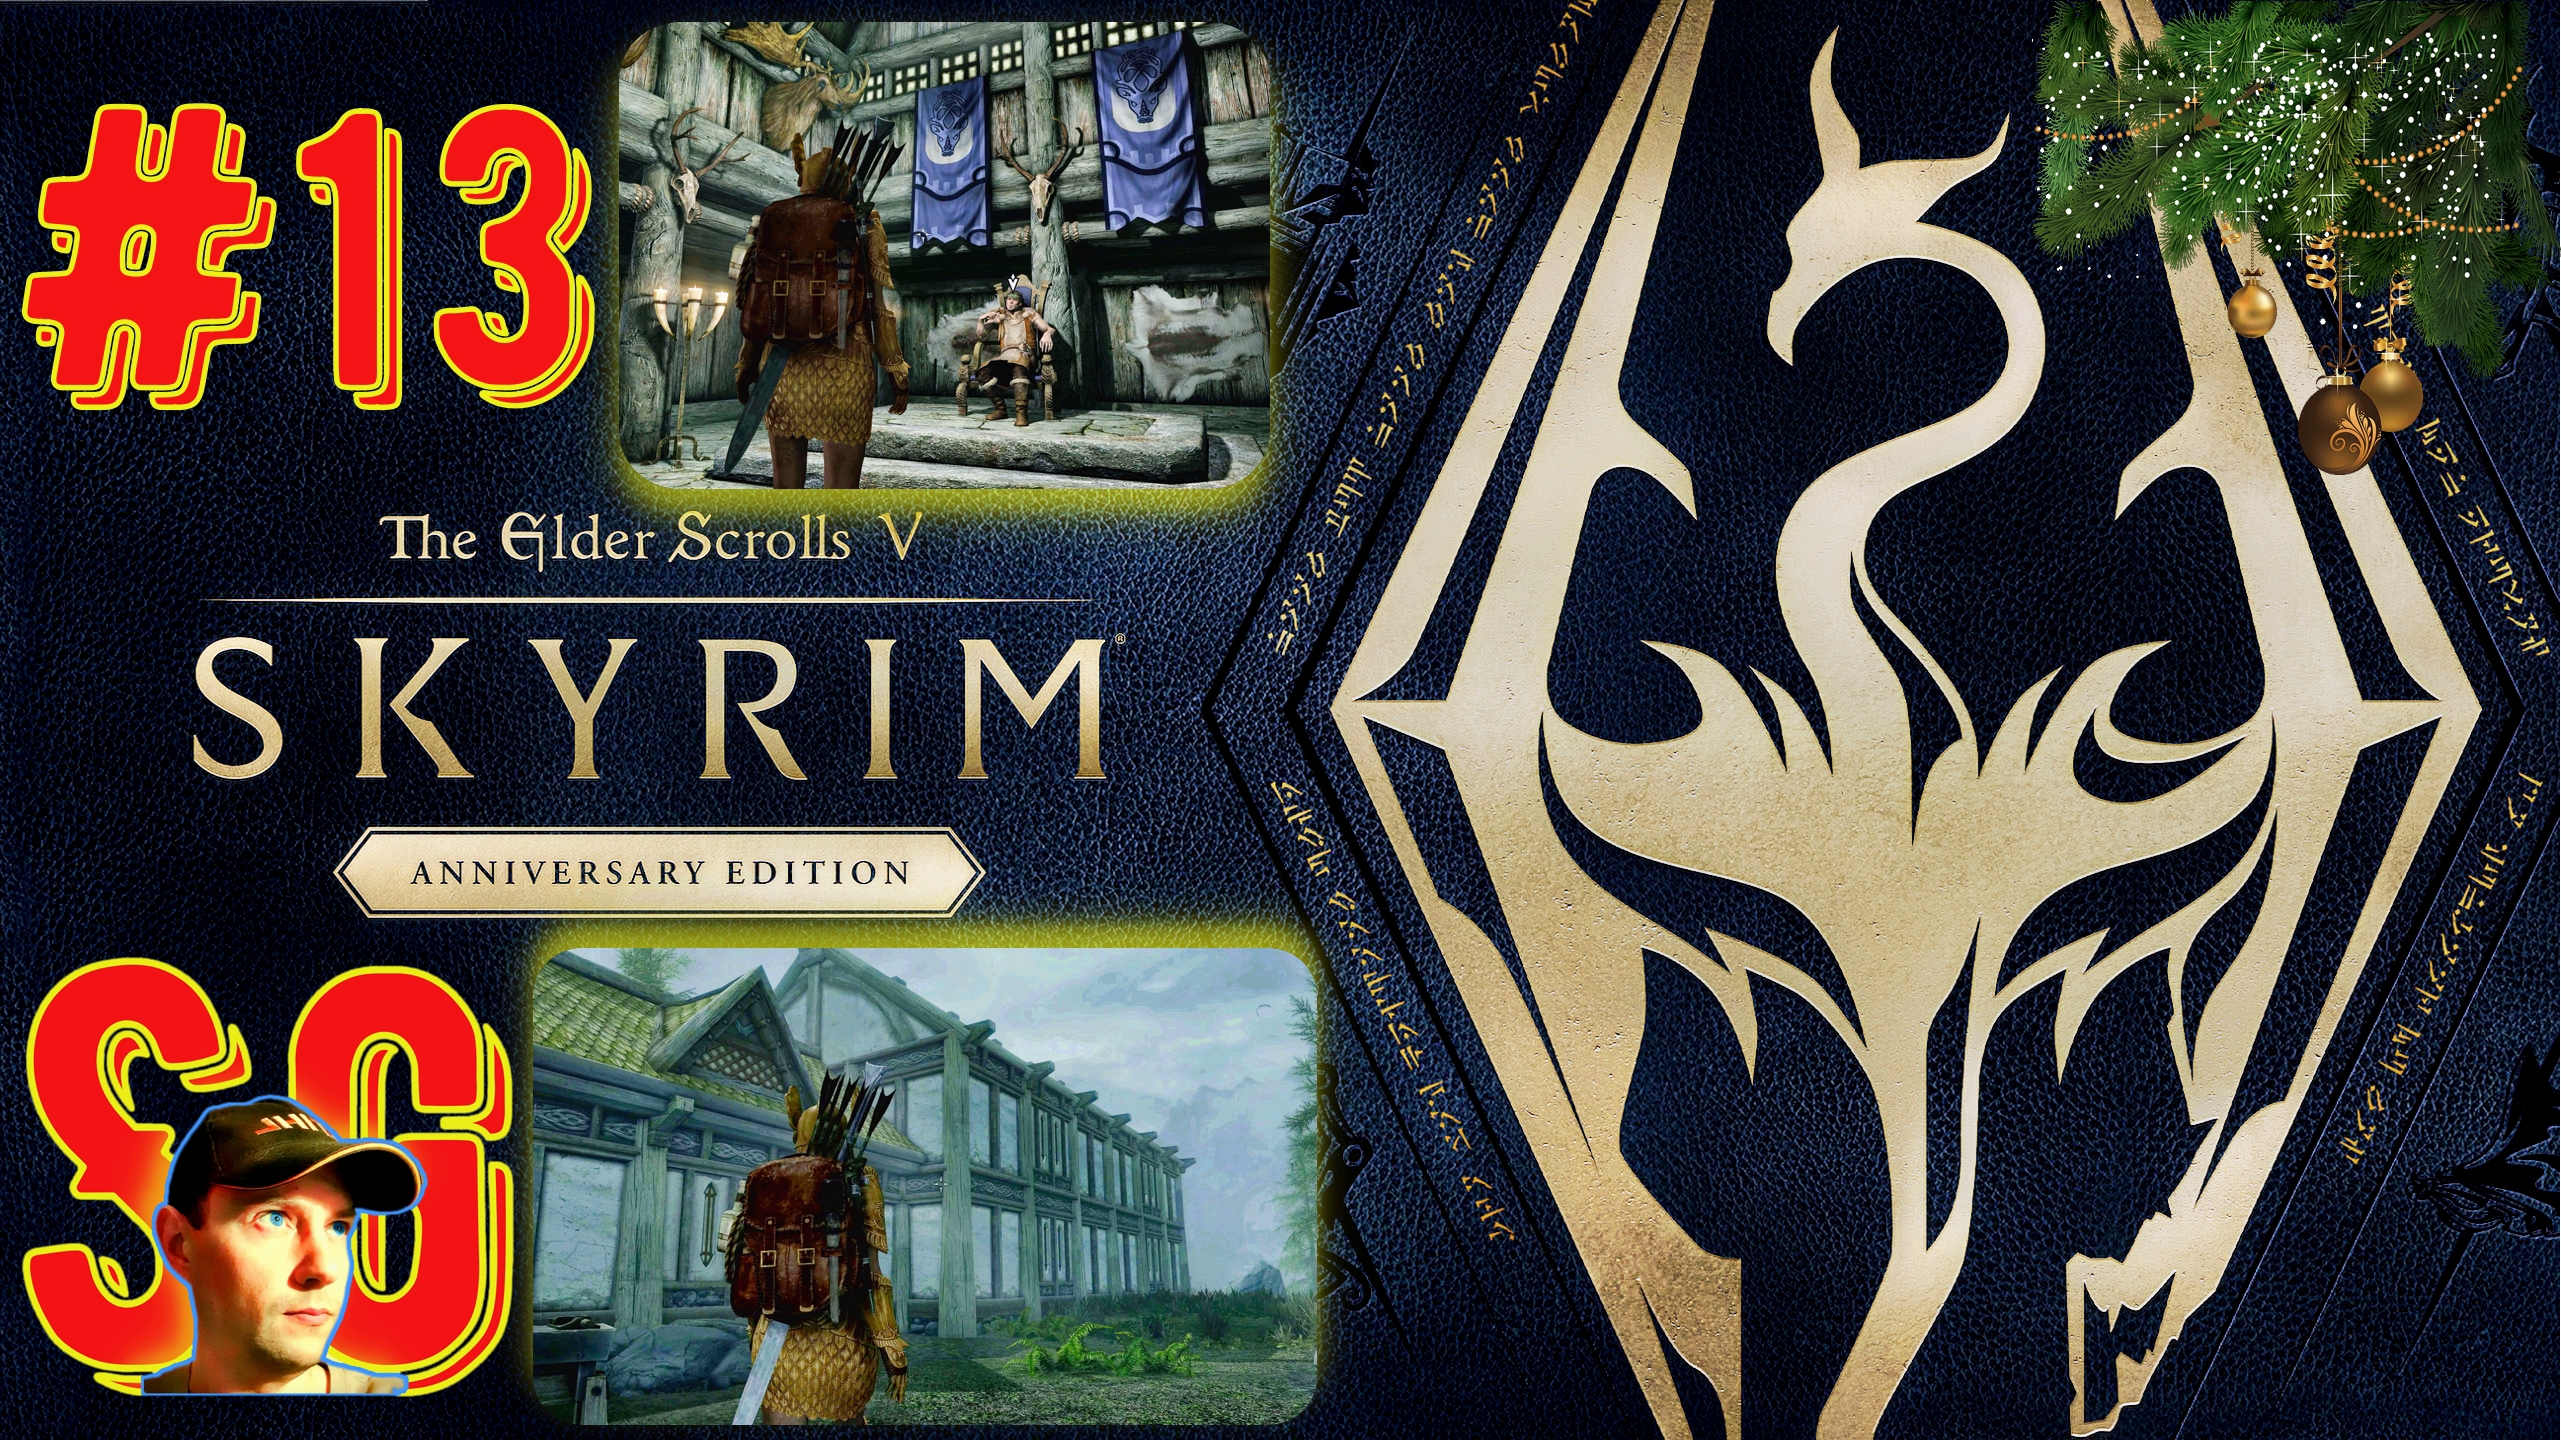 The Elder Scrolls V: Skyrim Anniversary Edition (#13) Купил участок в Фолкрите. Строю себе ДОМ.